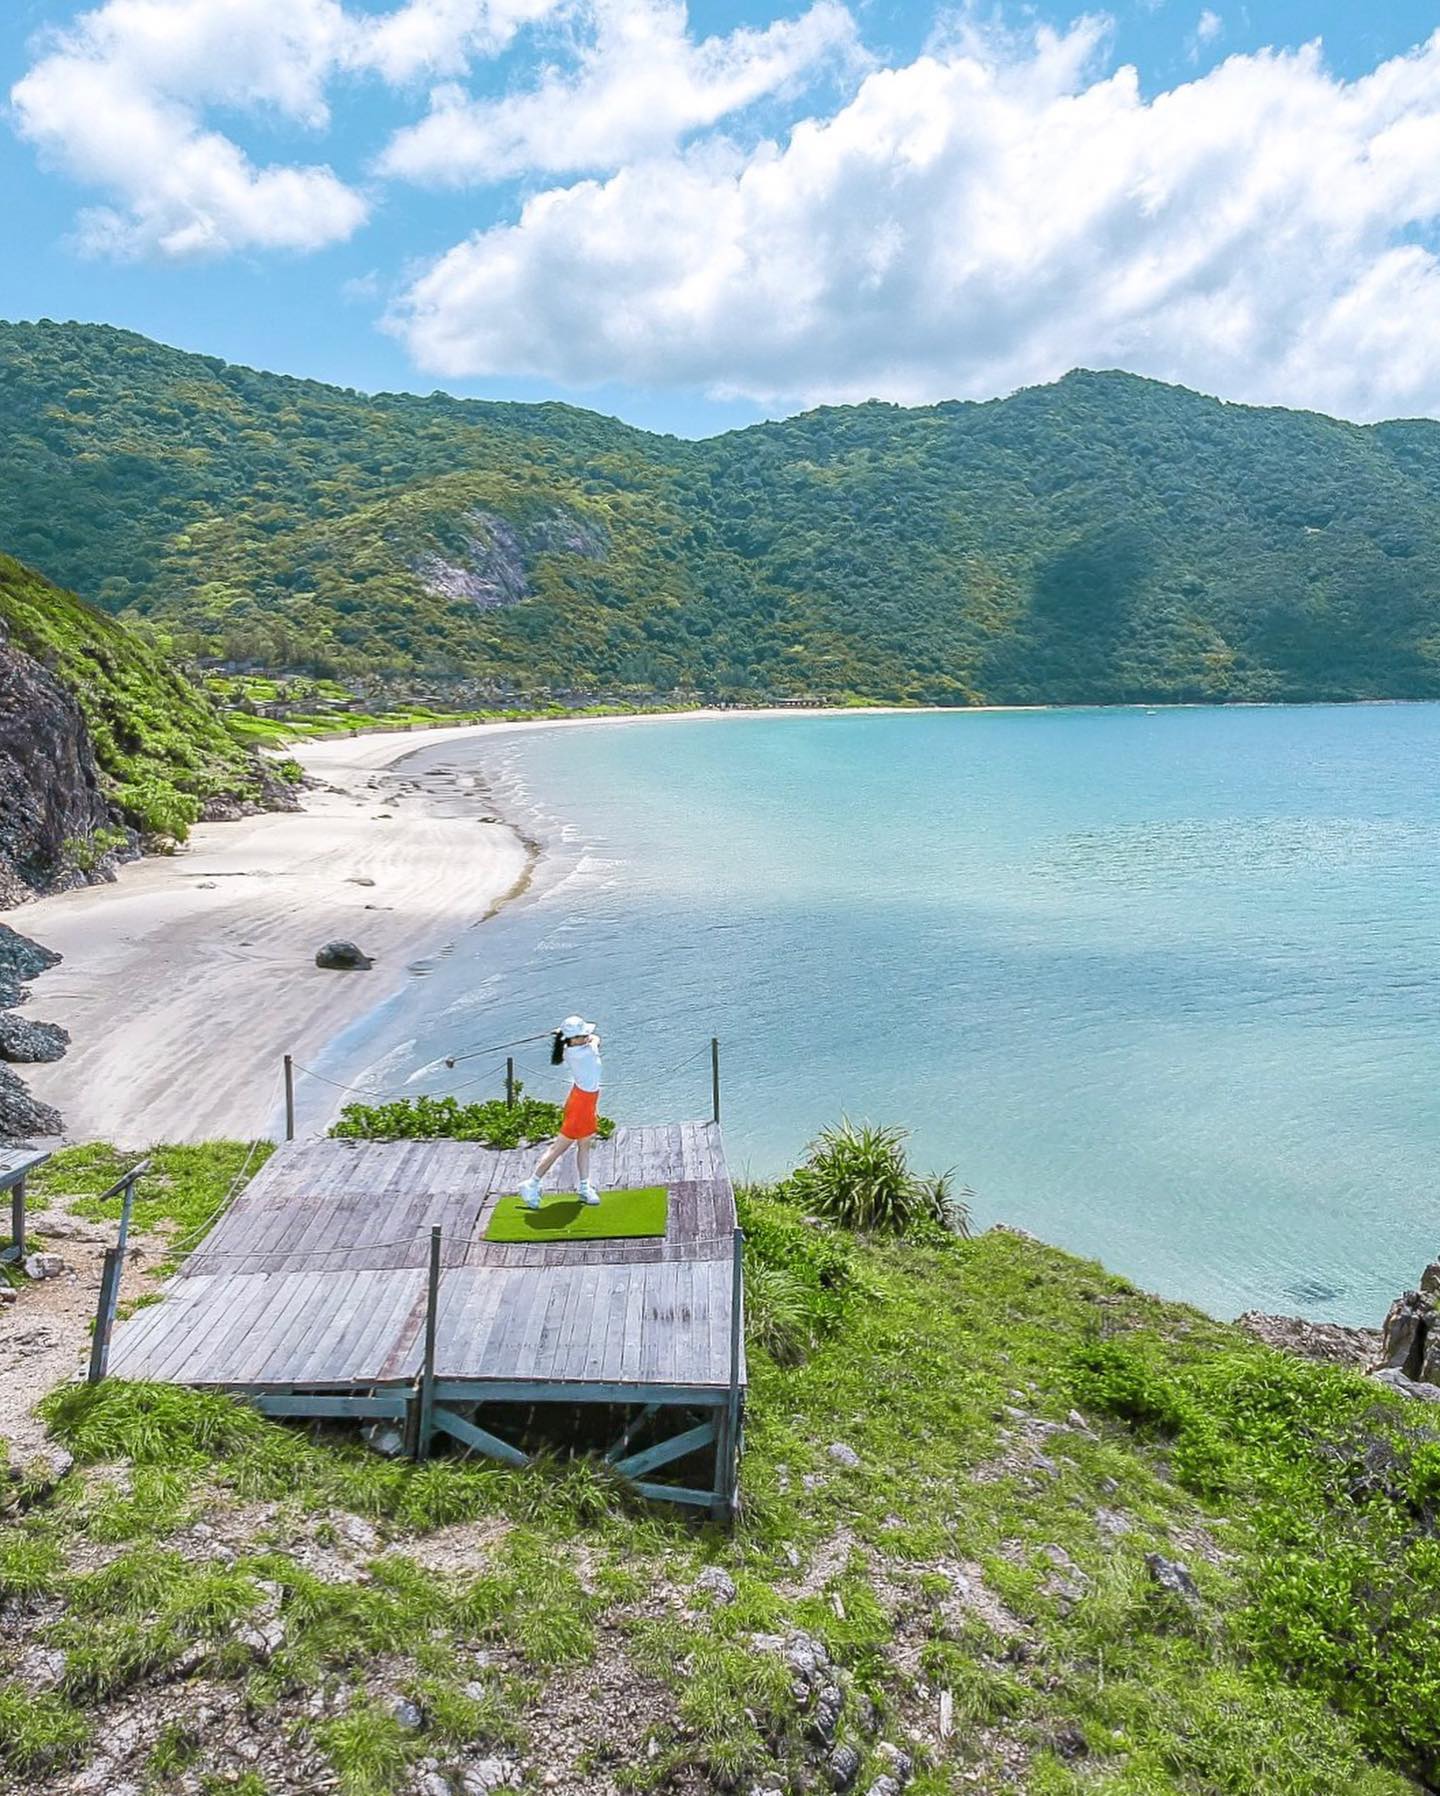 10 thiên đường nghỉ dưỡng biển đảo tuyệt vời nhất cho du lịch hè - 12